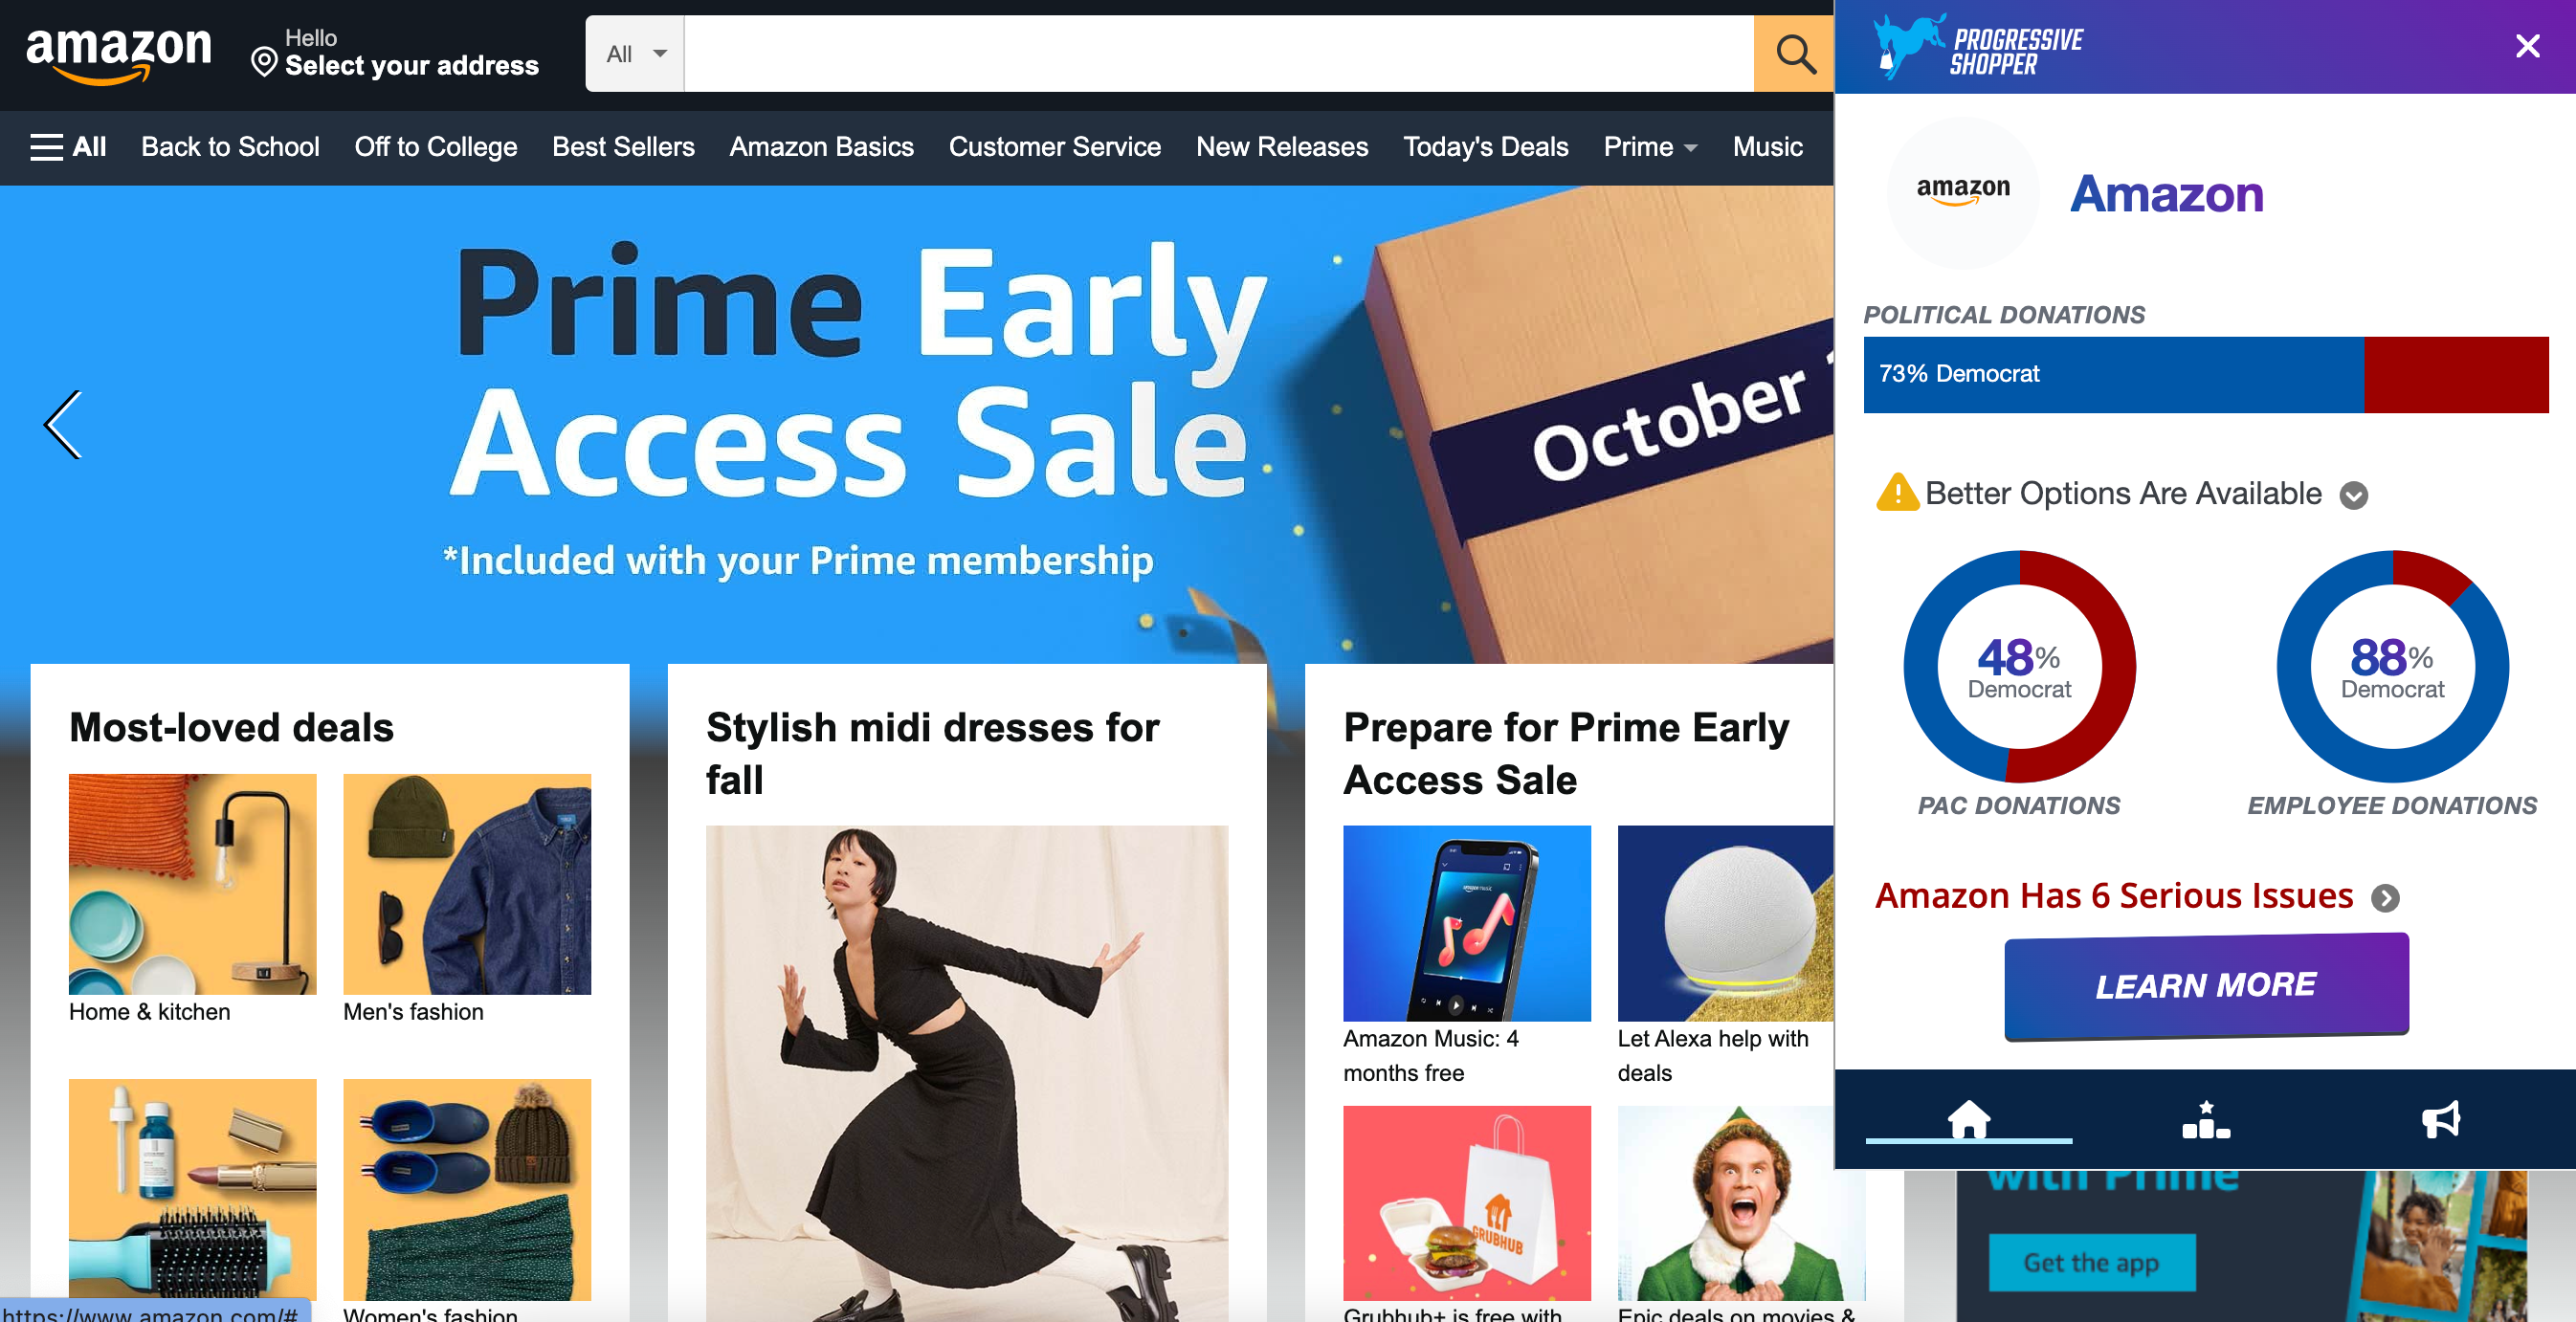 Progressive Shopper extension on Amazon.com